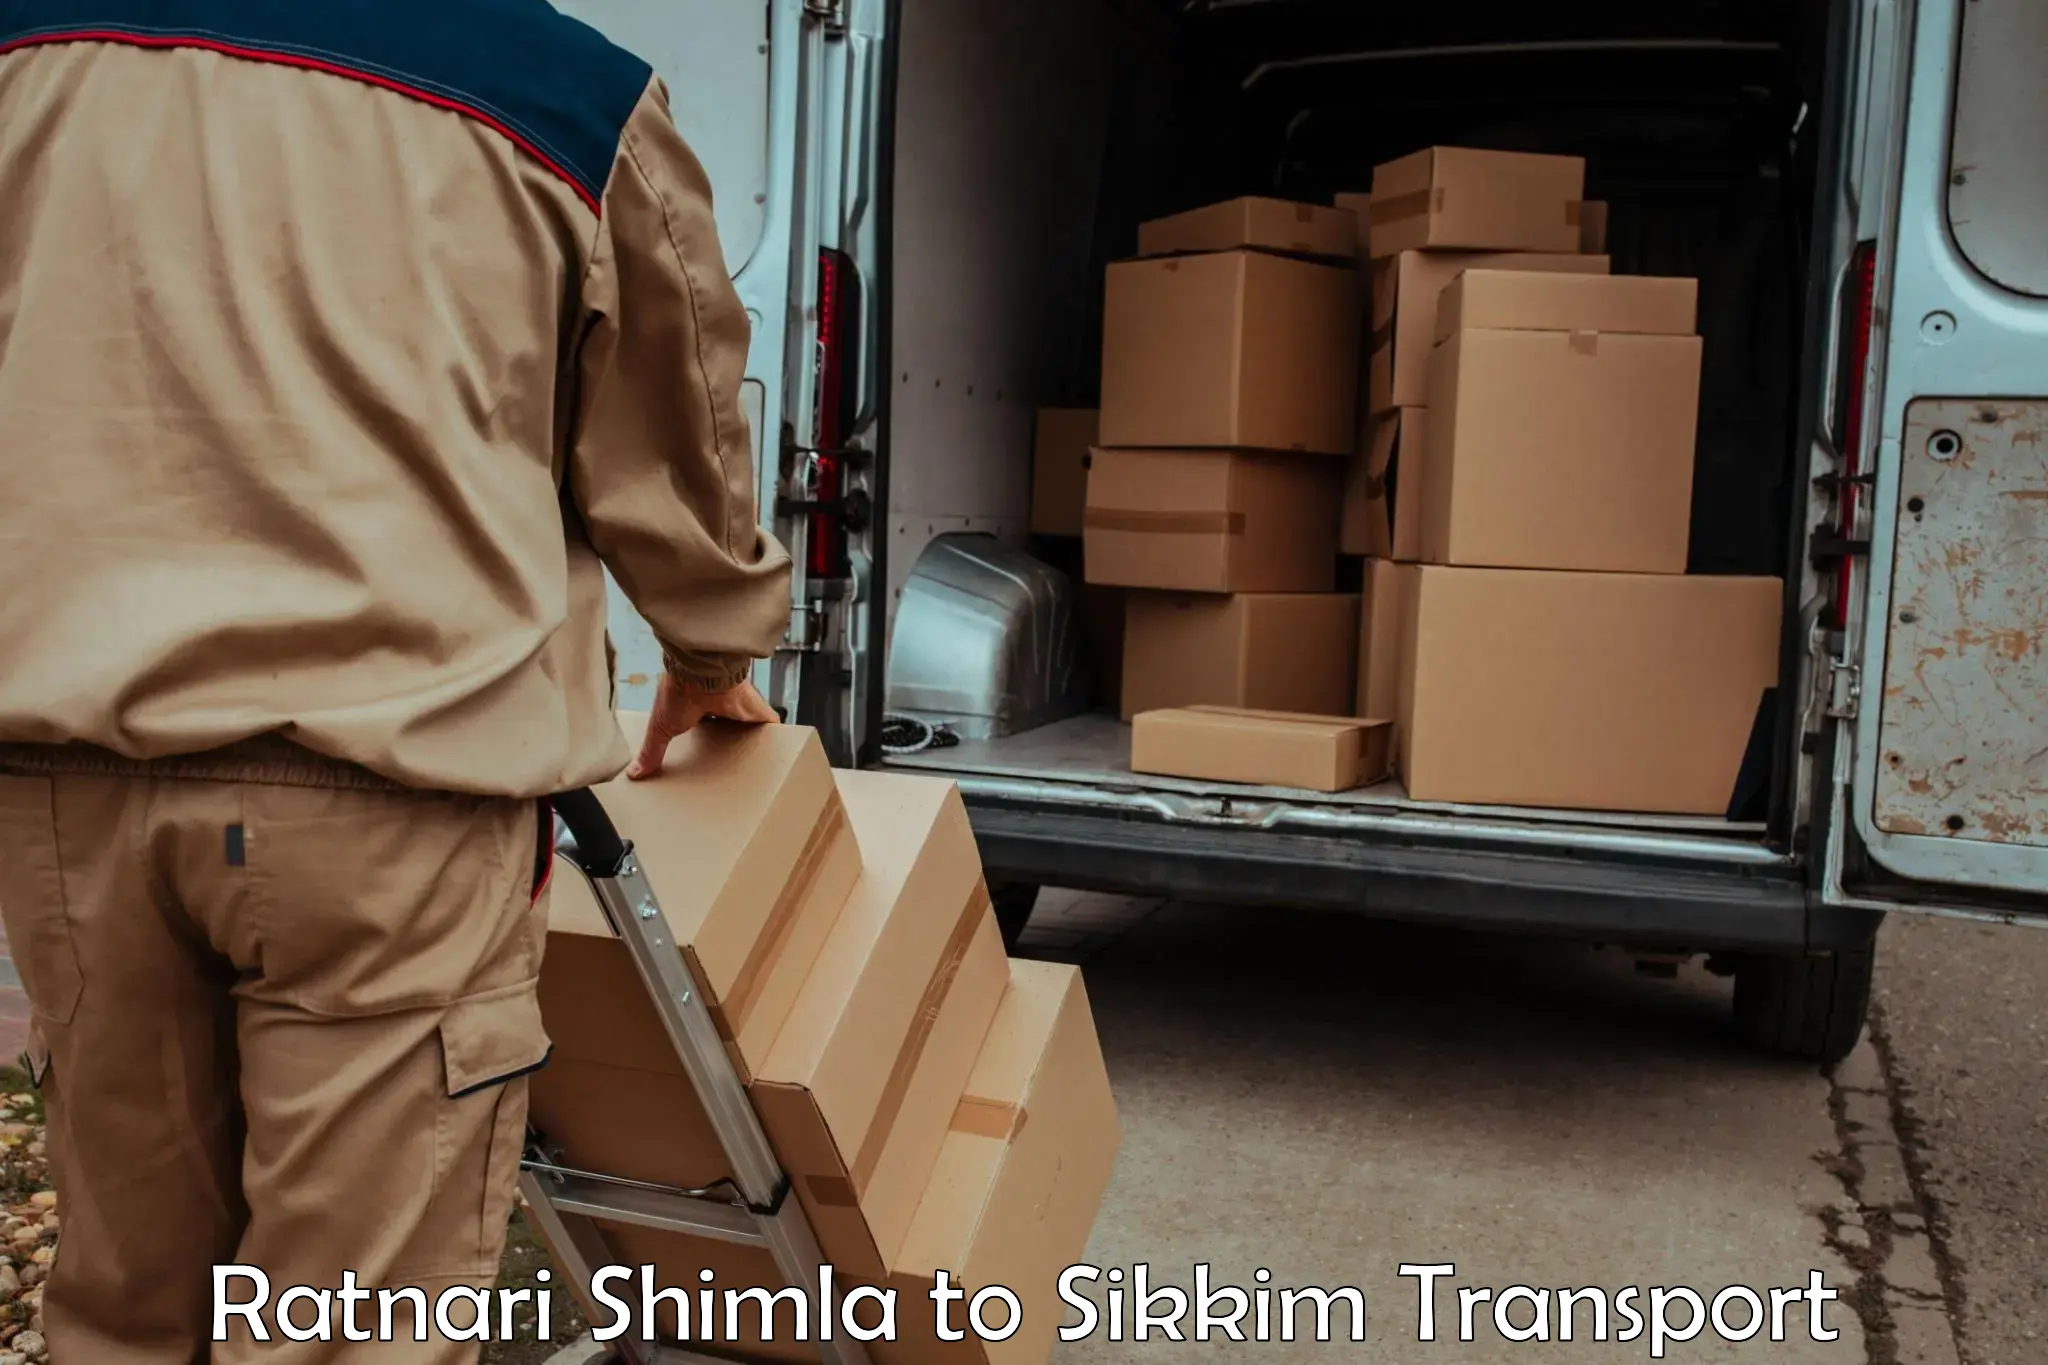 Pick up transport service Ratnari Shimla to South Sikkim